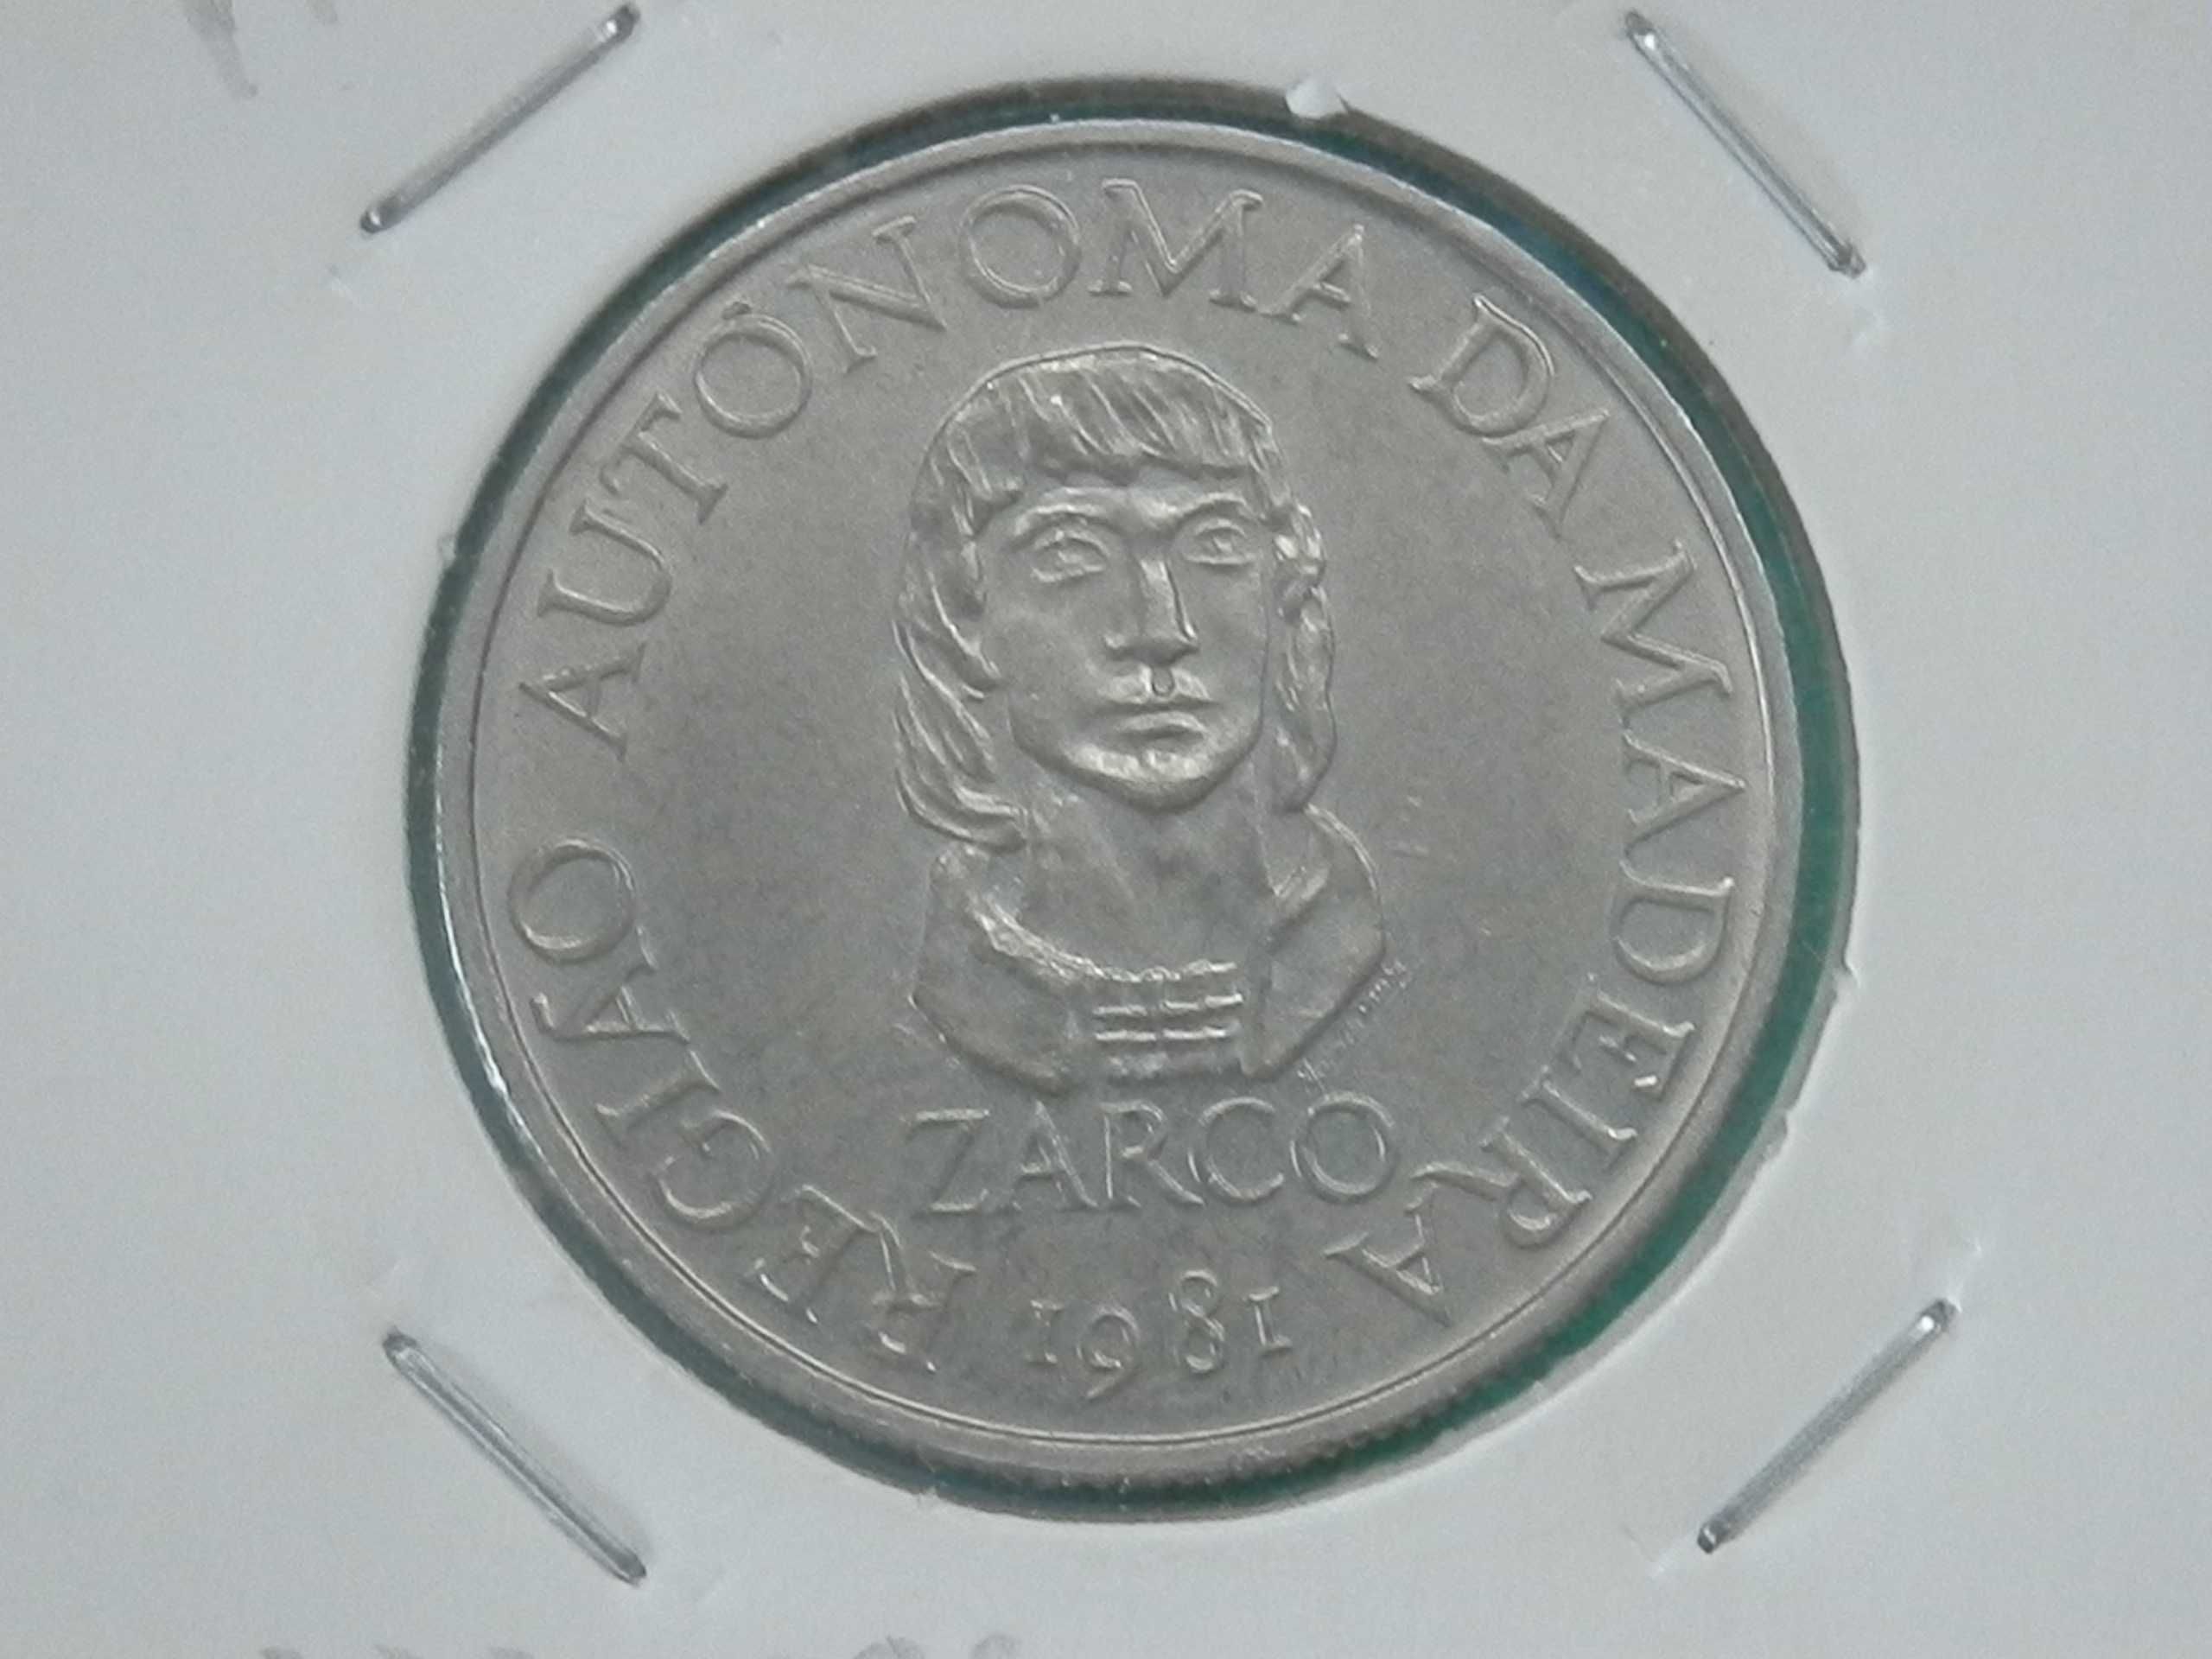 1023 - Comem: 25$00 escudos 1981 cuni, R.A. Madeira, por 0,75